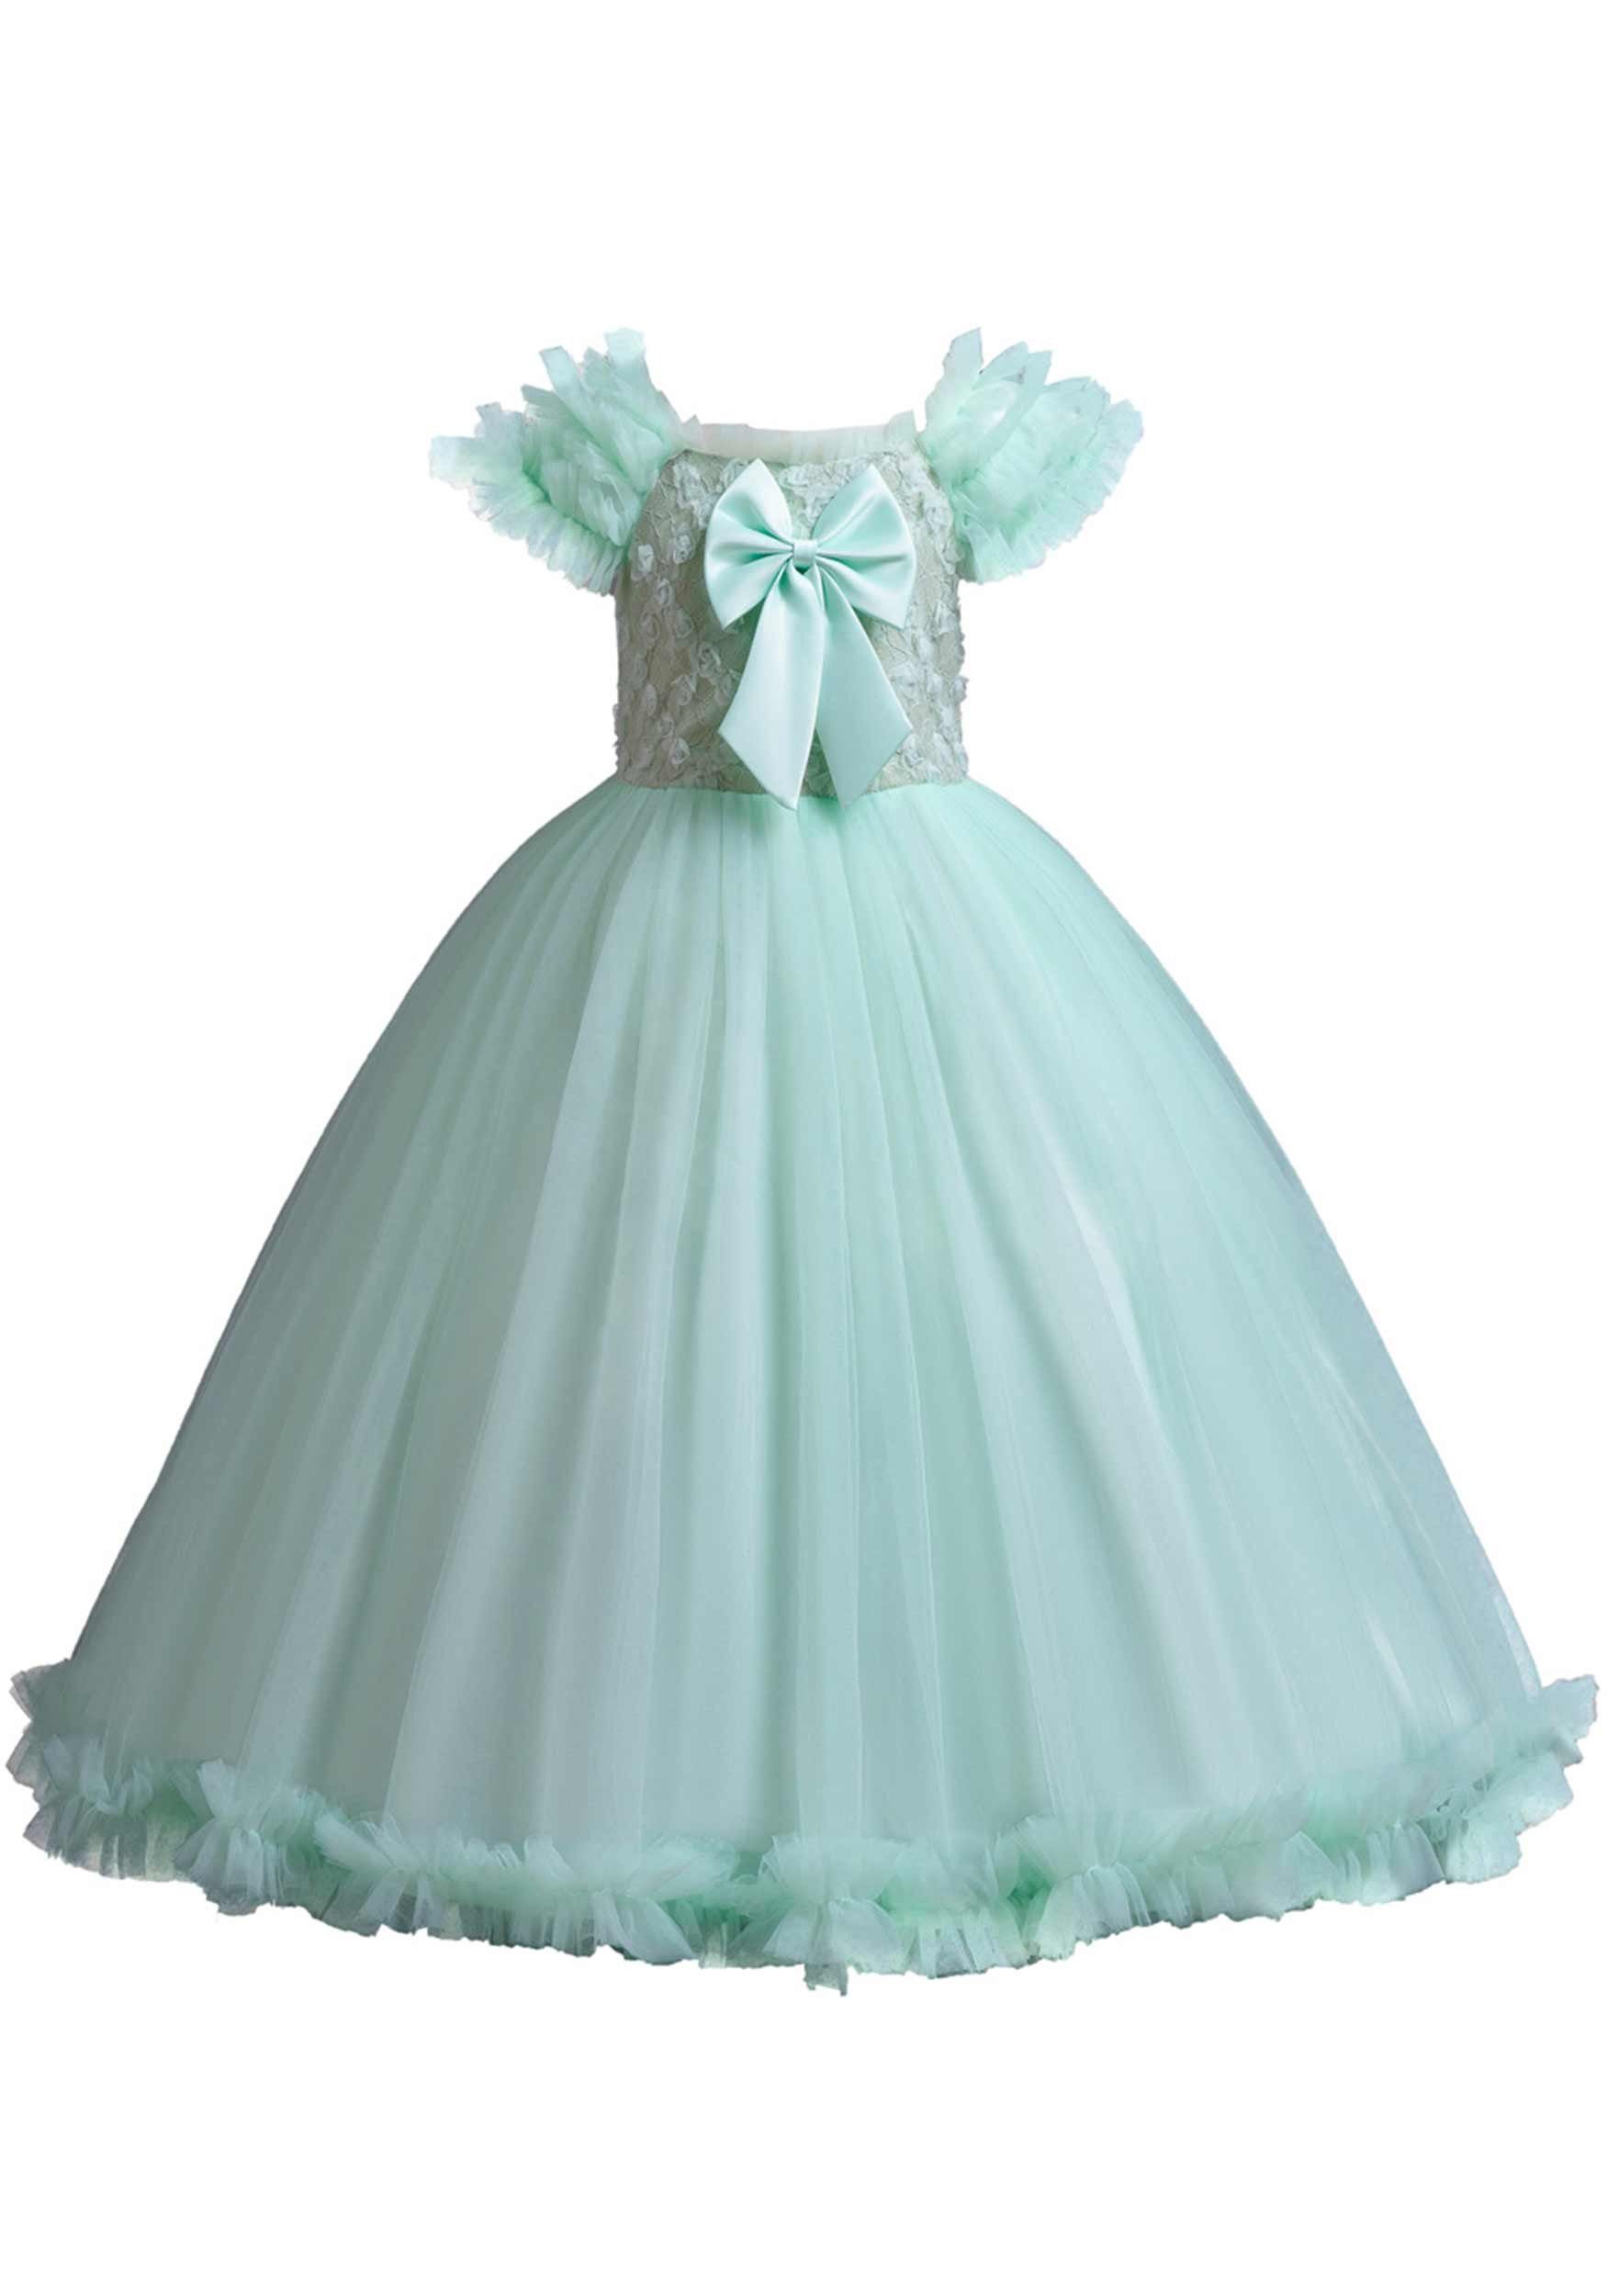 Daisred Tüllkleid Kinderkleider Prinzessinnenkleider Abendkleider Ballkleid Grün